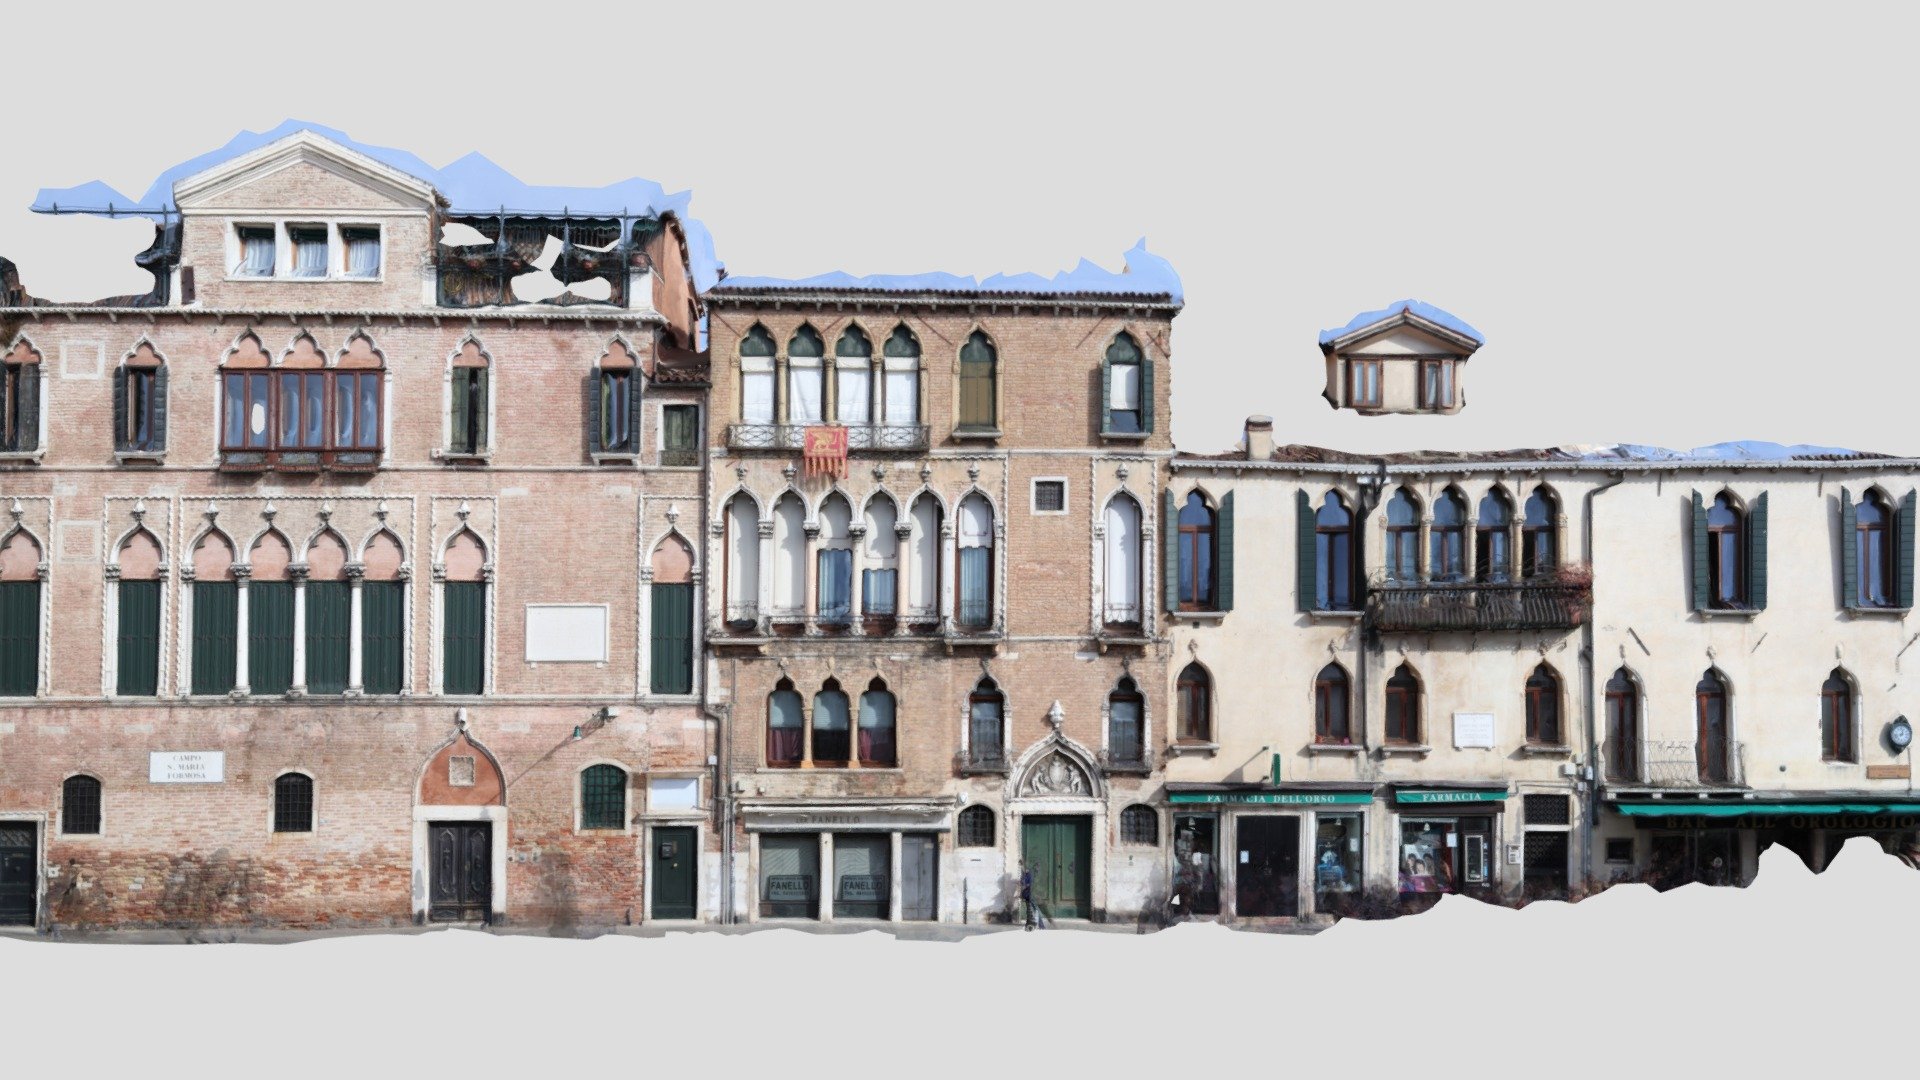 Venice's building facade